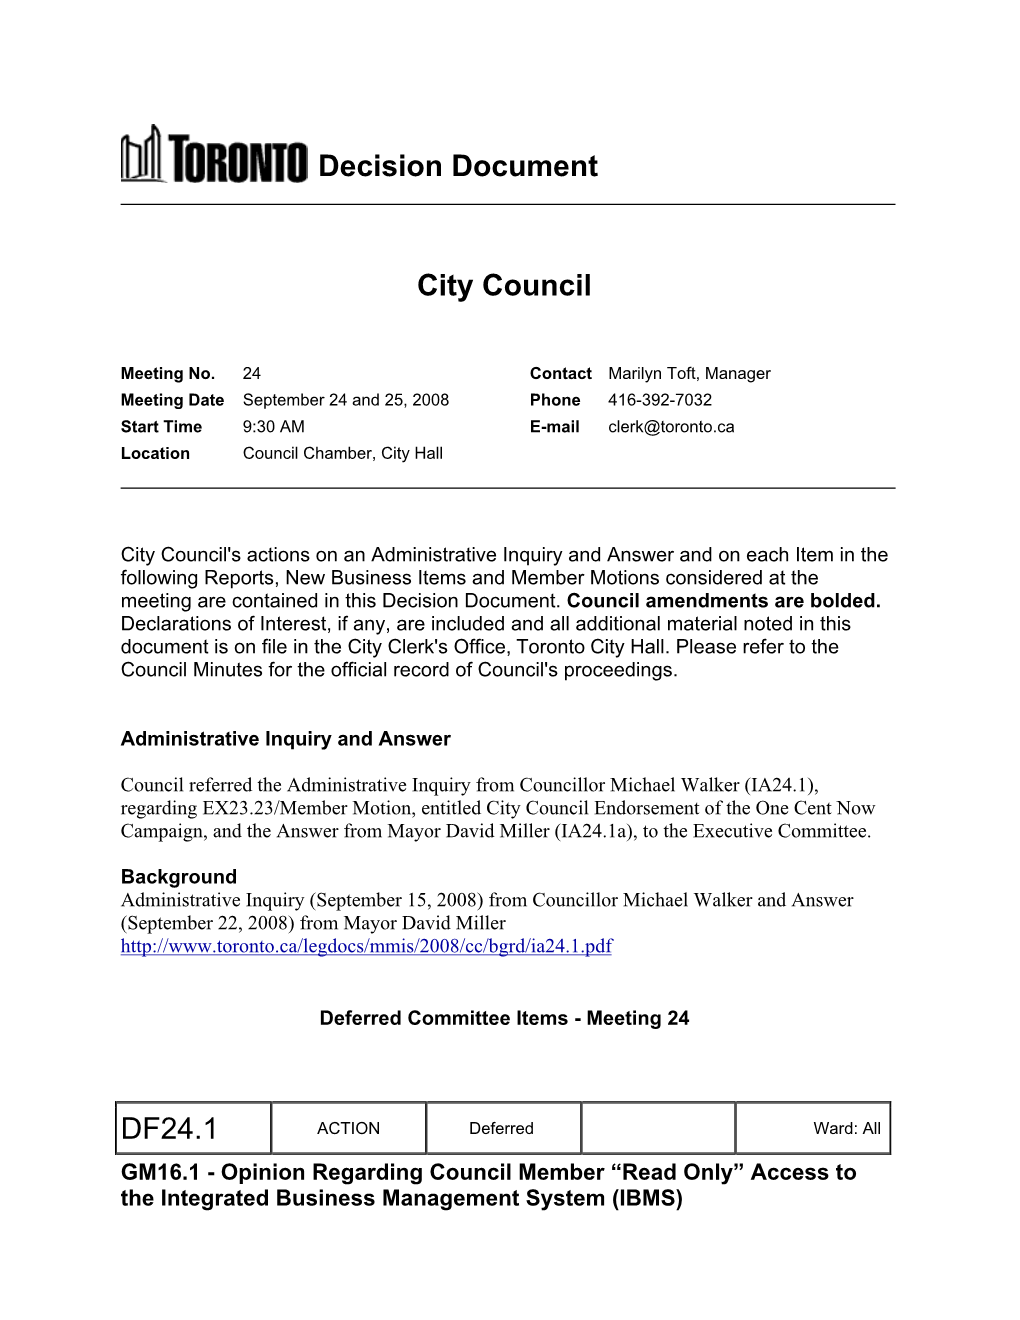 Decision Document City Council DF24.1